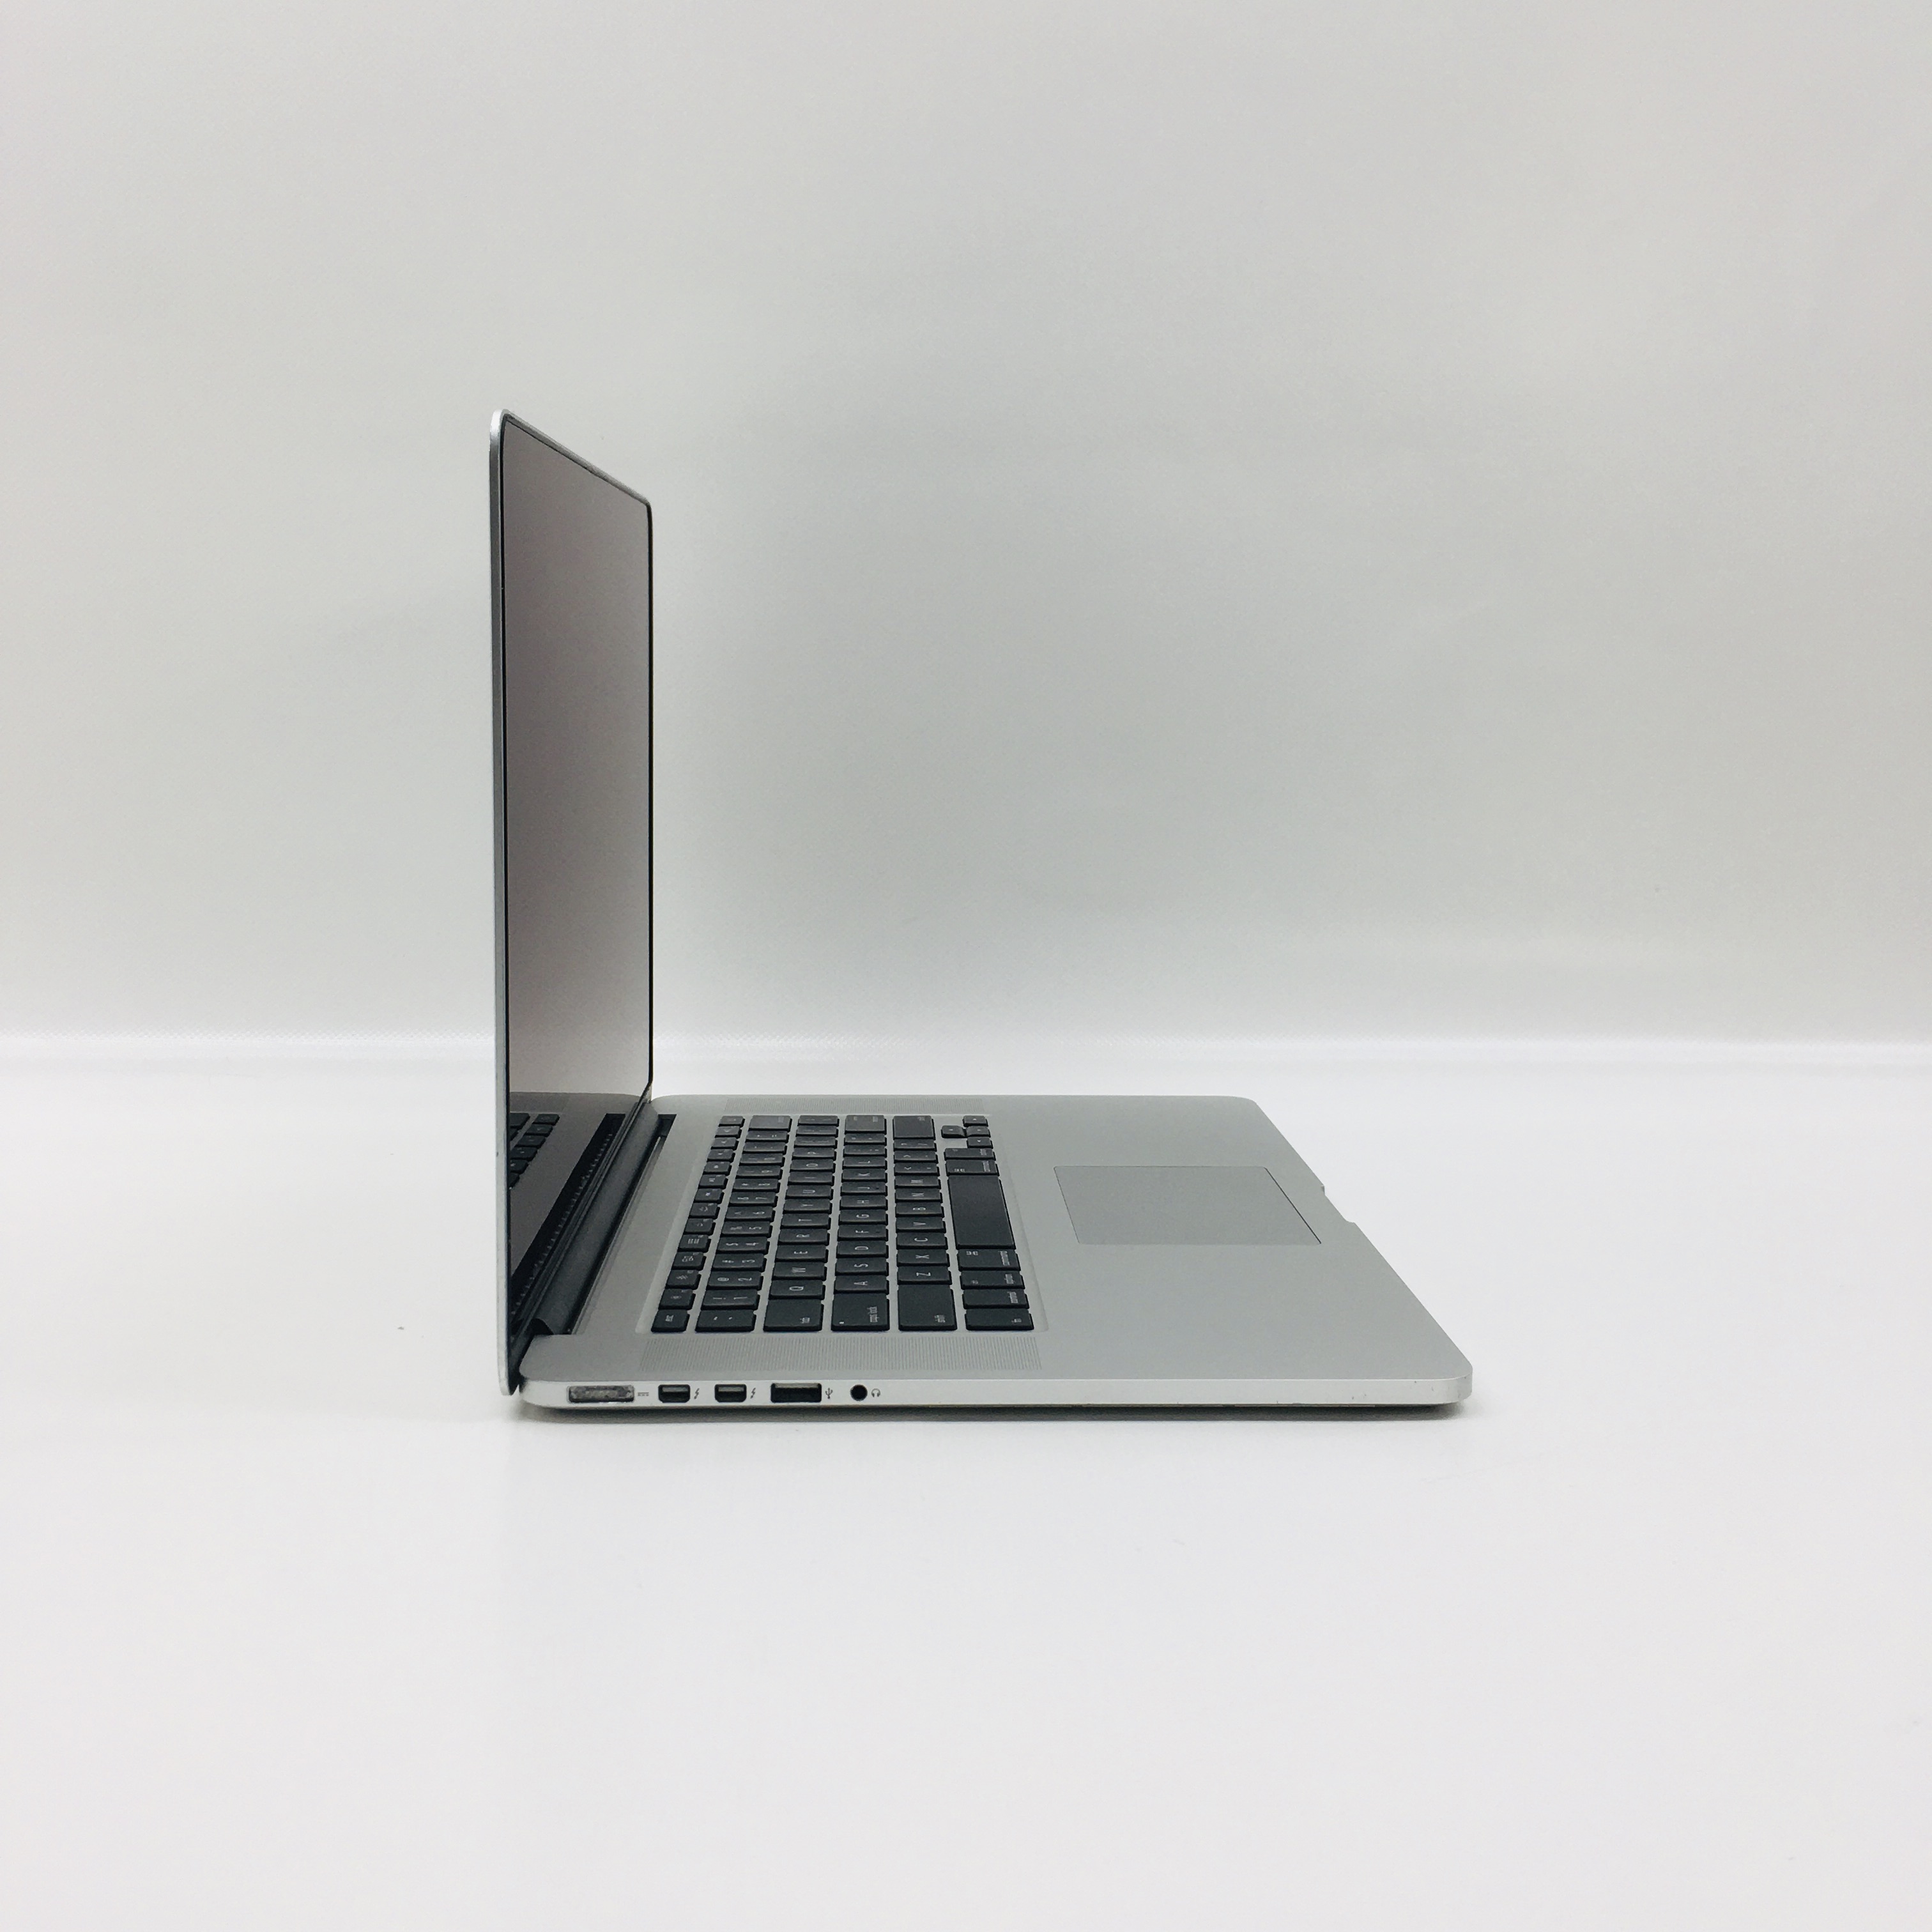 MacBook Pro Retina 15" Mid 2014 (Intel Quad-Core i7 2.5 GHz 16 GB RAM 256 GB SSD), Intel Quad-Core i7 2.5 GHz, 16 GB RAM, 256 GB SSD, image 3